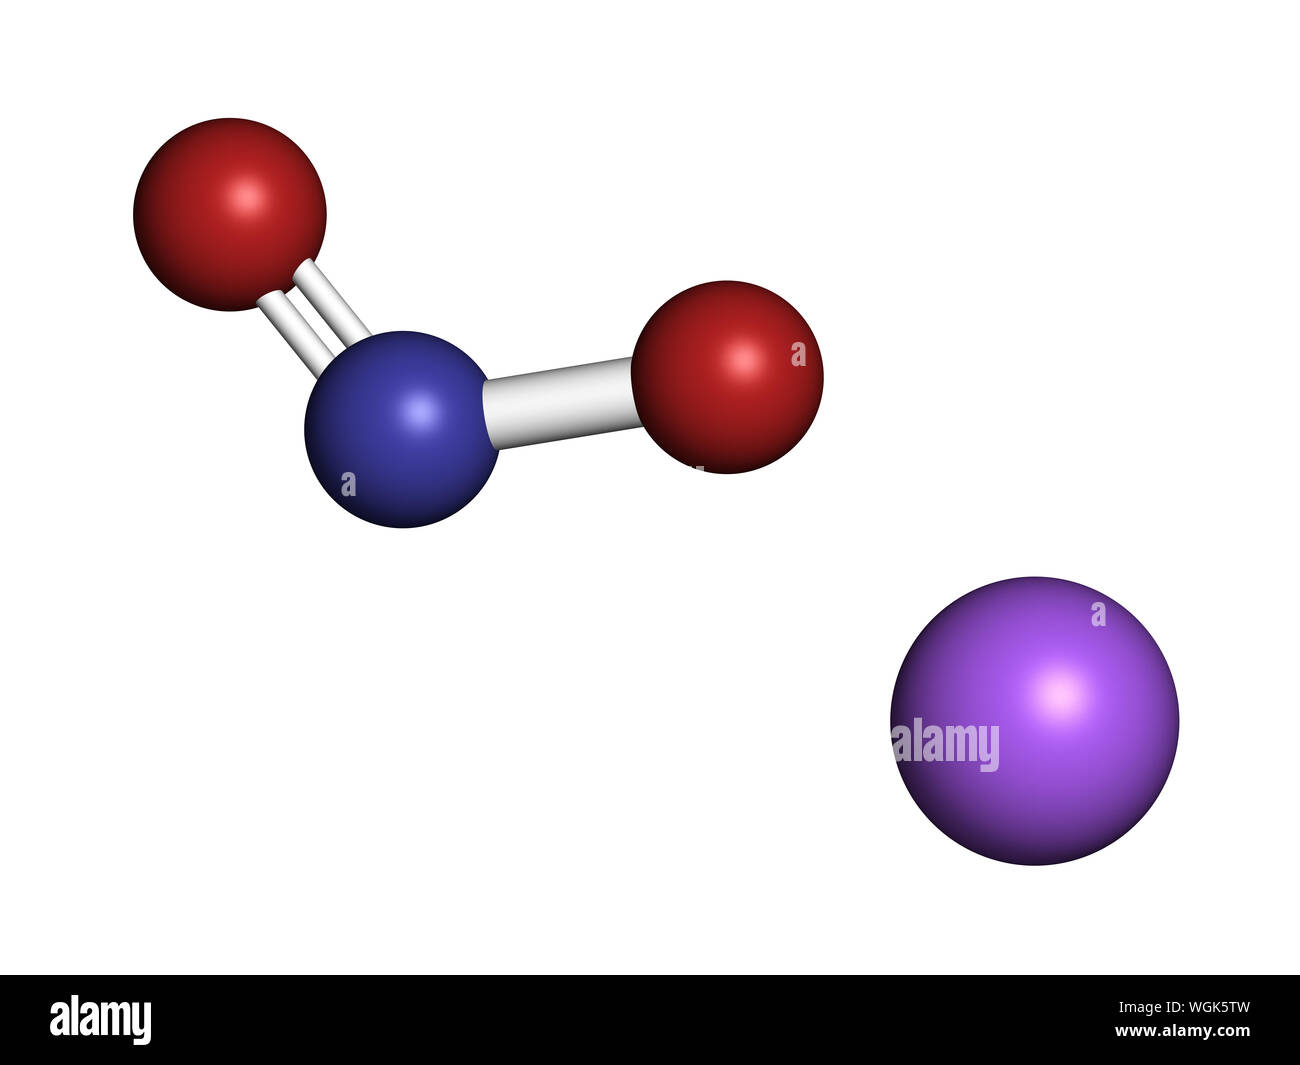 https://c8.alamy.com/compit/wgk5tw/il-nitrito-di-sodio-struttura-chimica-utilizzato-come-farmaco-additivo-alimentare-e250-ecc-il-rendering-3d-gli-atomi-sono-rappresentati-come-sfere-con-colore-convenzionale-co-wgk5tw.jpg